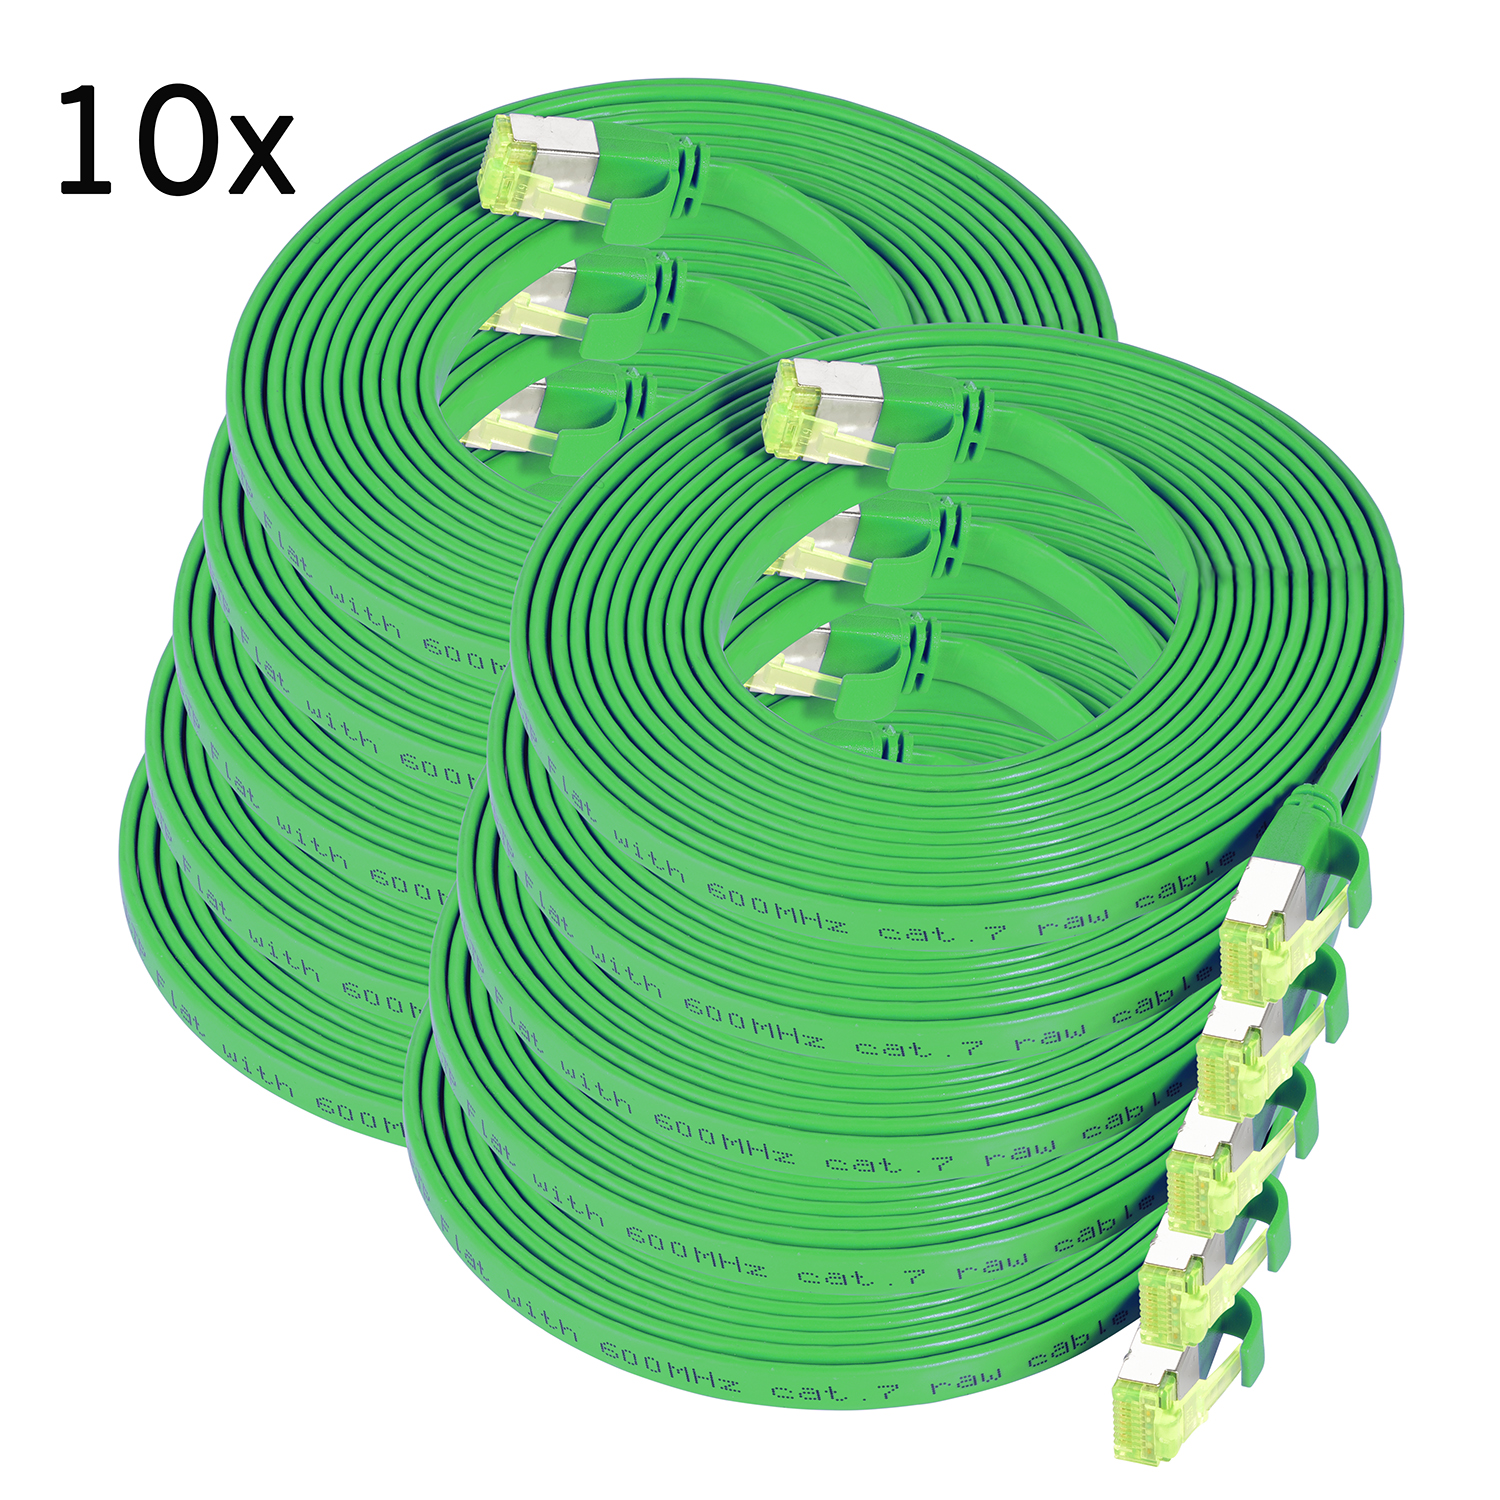 TPFNET 10er Pack 7,5m Patchkabel U/FTP Netzwerkkabel, 7,5 Flachkabel grün, 10 GBit, m 